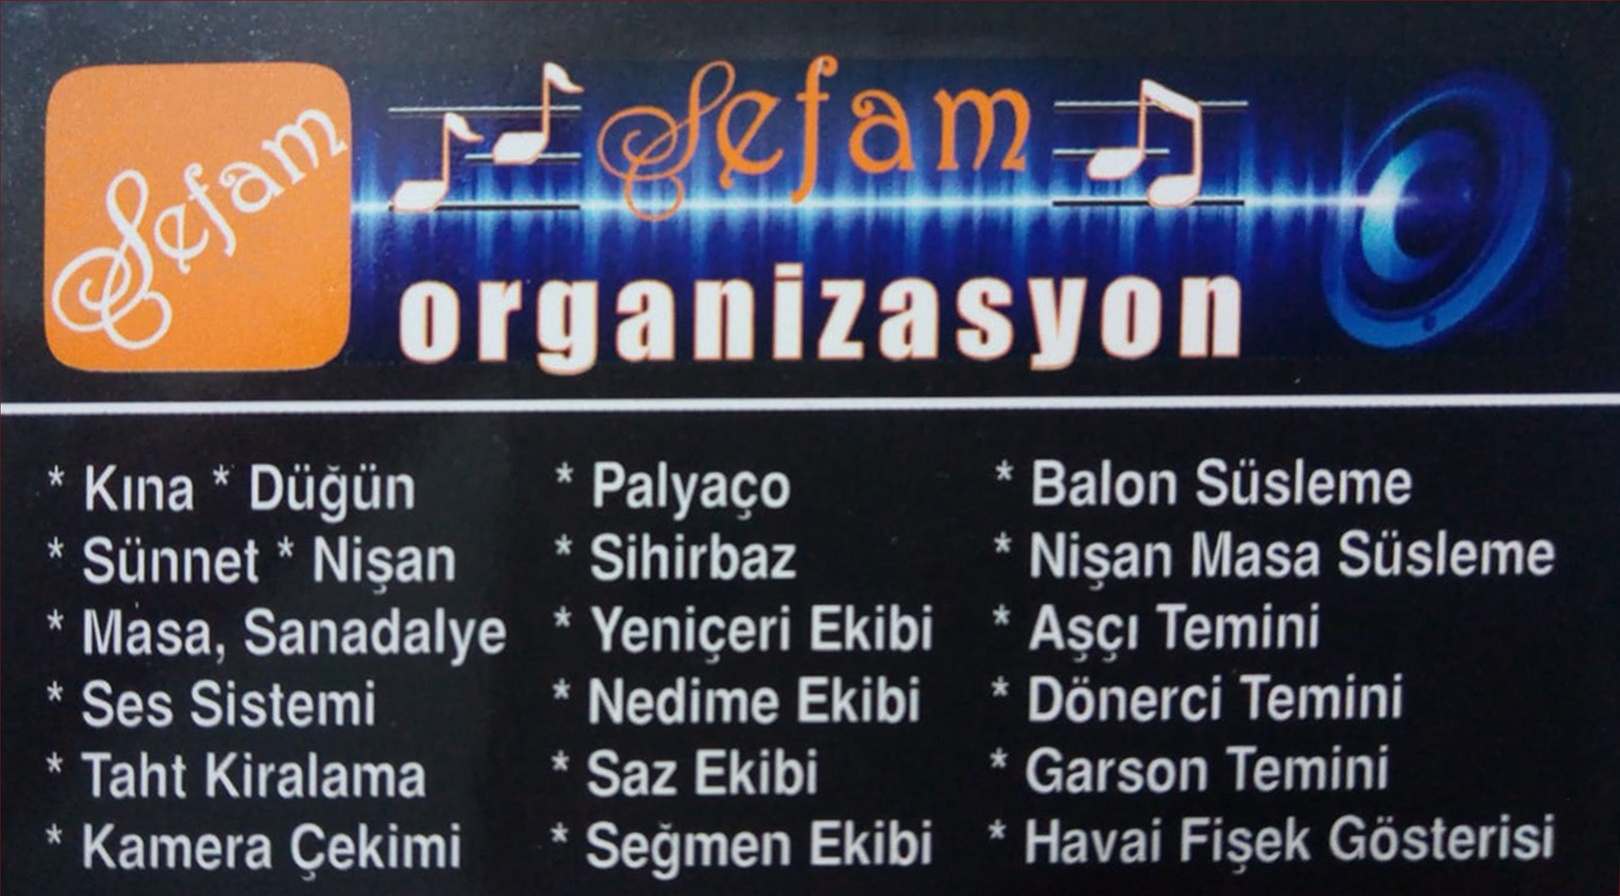 Ankara Kızılcahamam Sefam Organizasyon Ankara 0536 474 94 46 - 0552 474 94 46